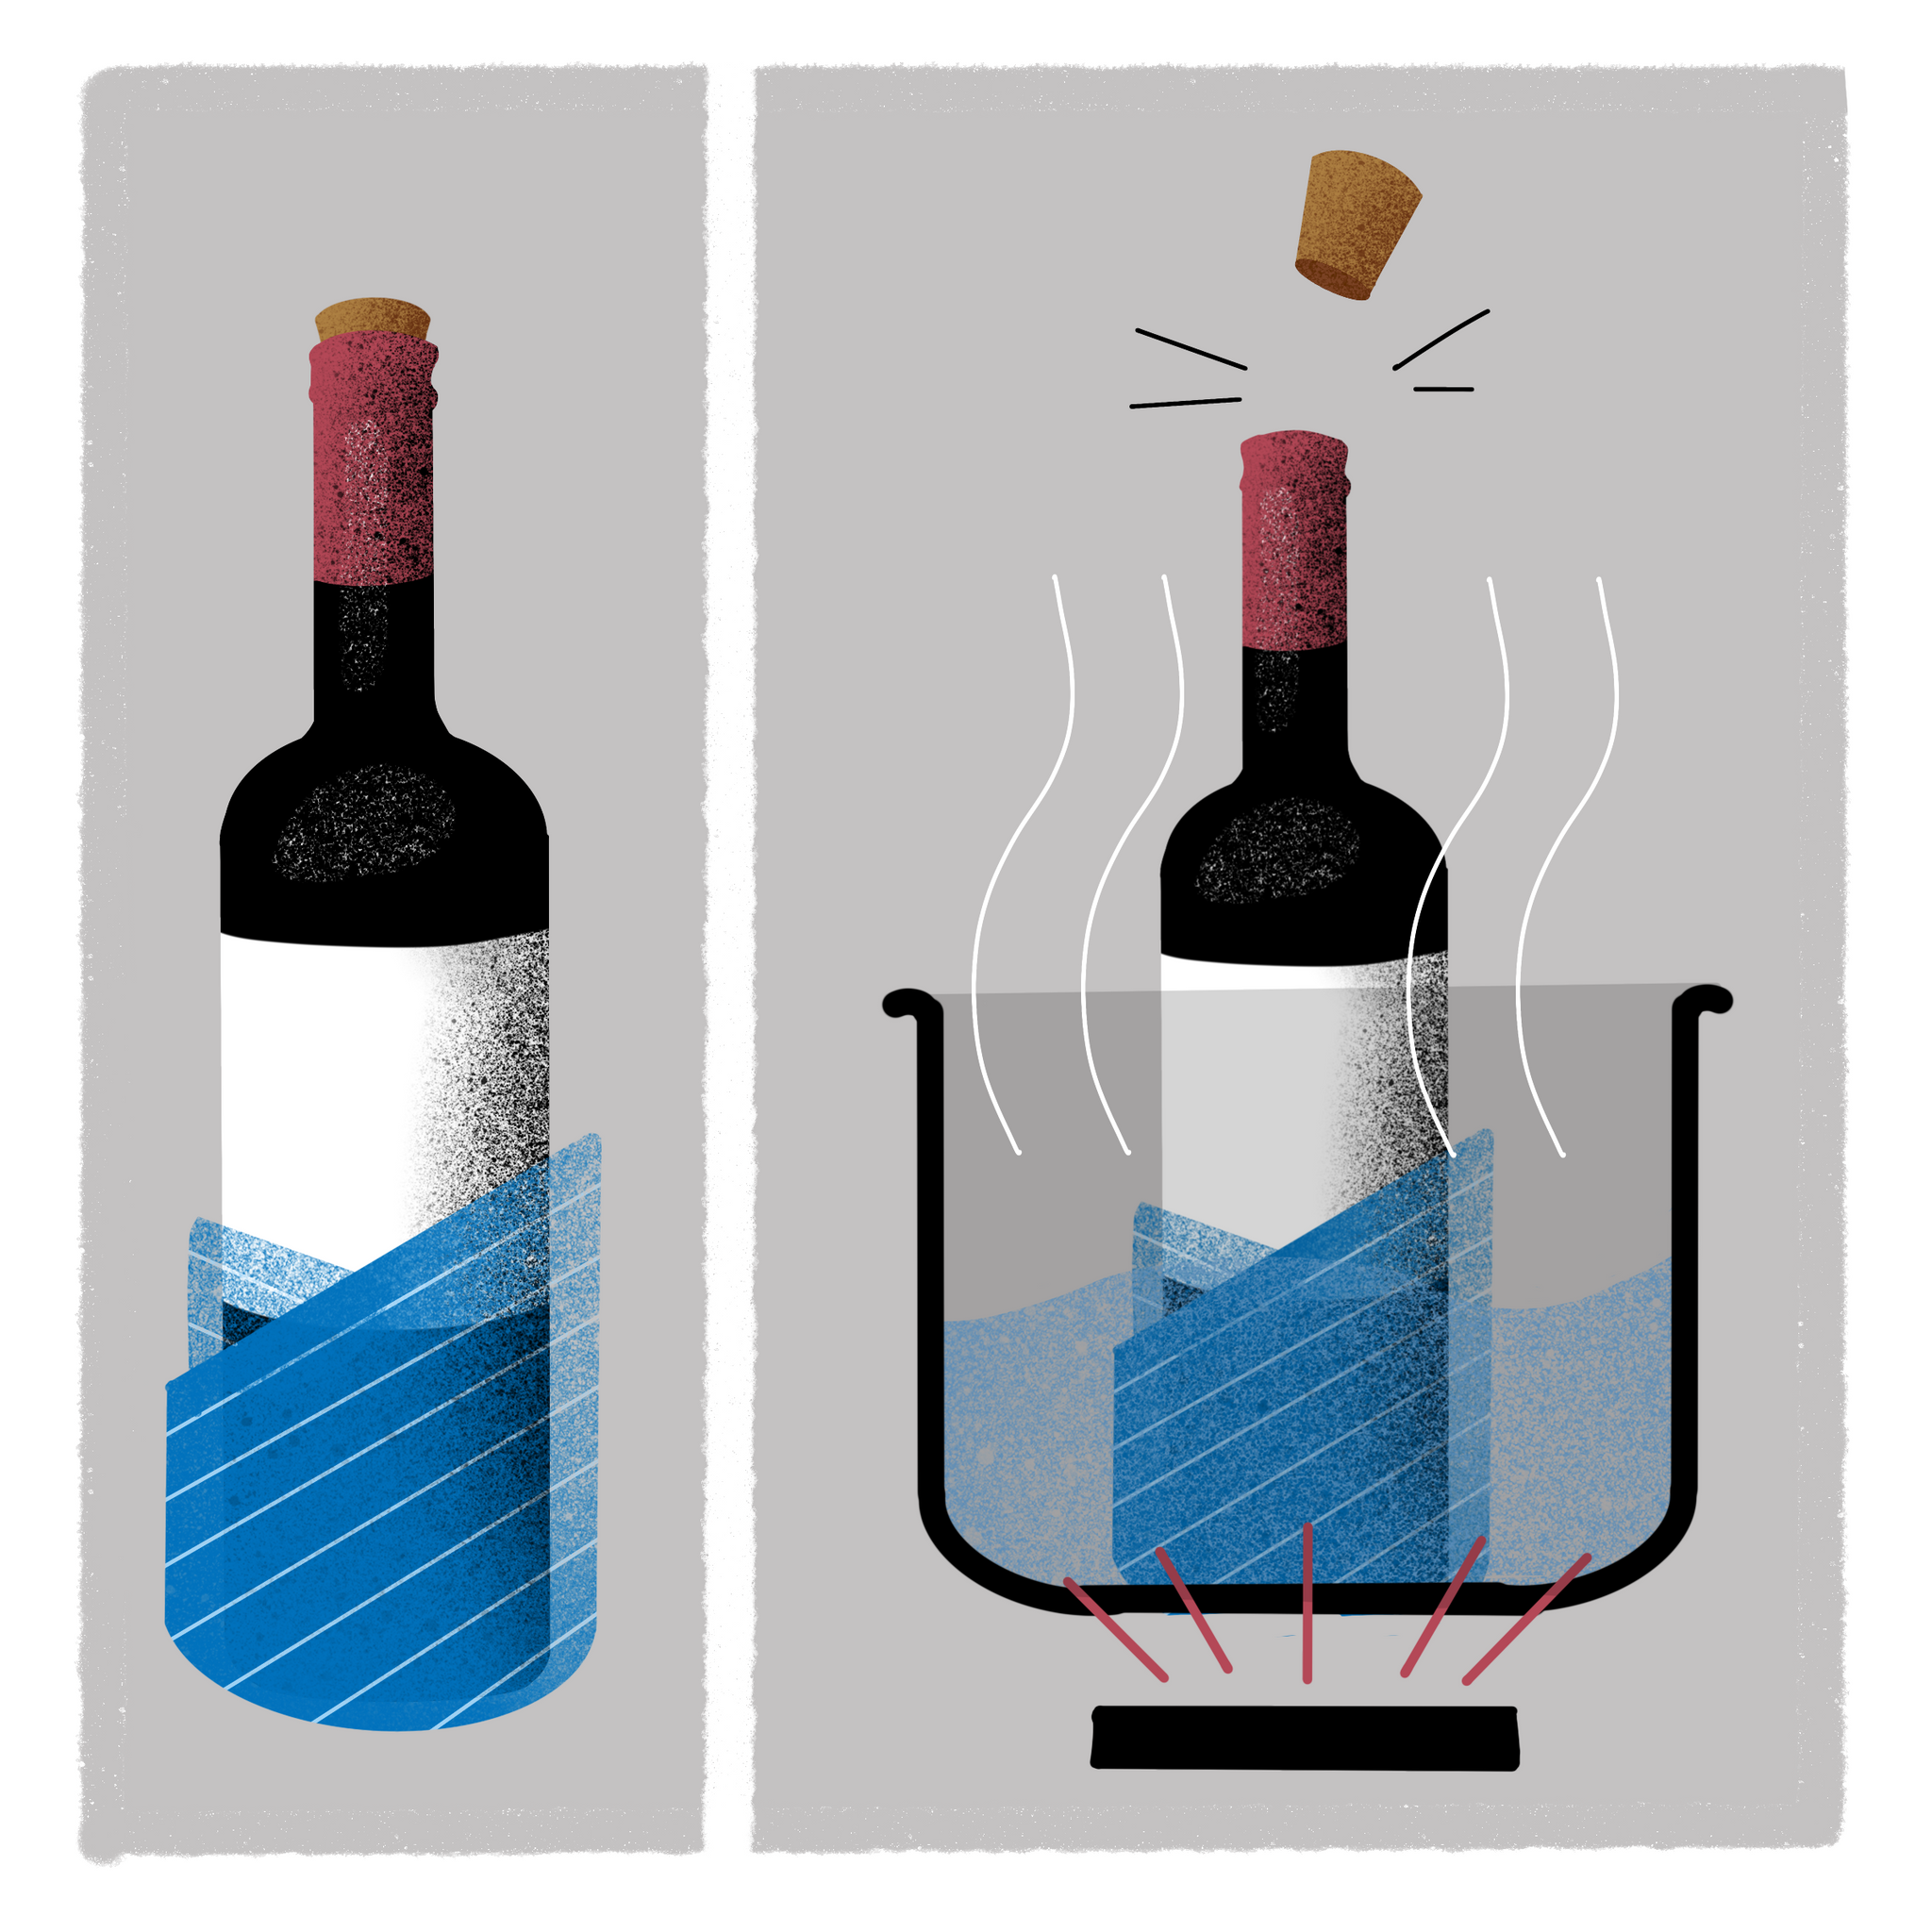 19 способов как открыть вино без штопора в домашних условиях